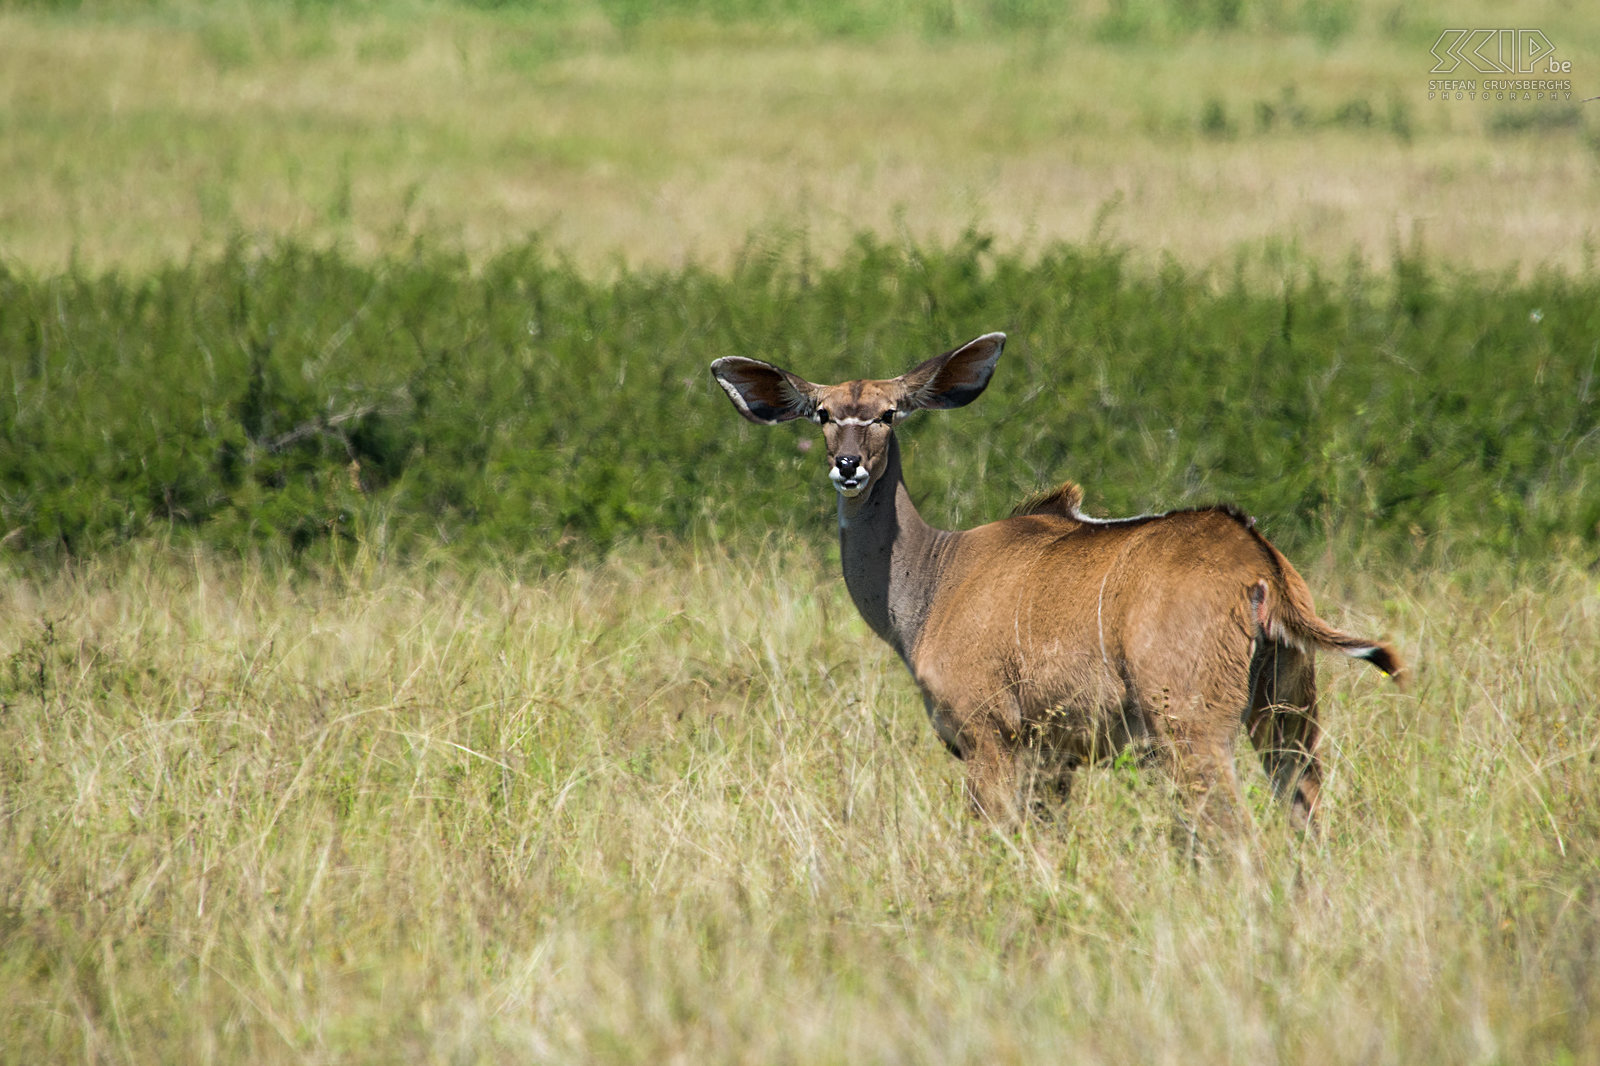 Nechisar - Koedoe Vrouwelijke koedoe (greater kudu, Tragelaphus strepsiceros). Stefan Cruysberghs